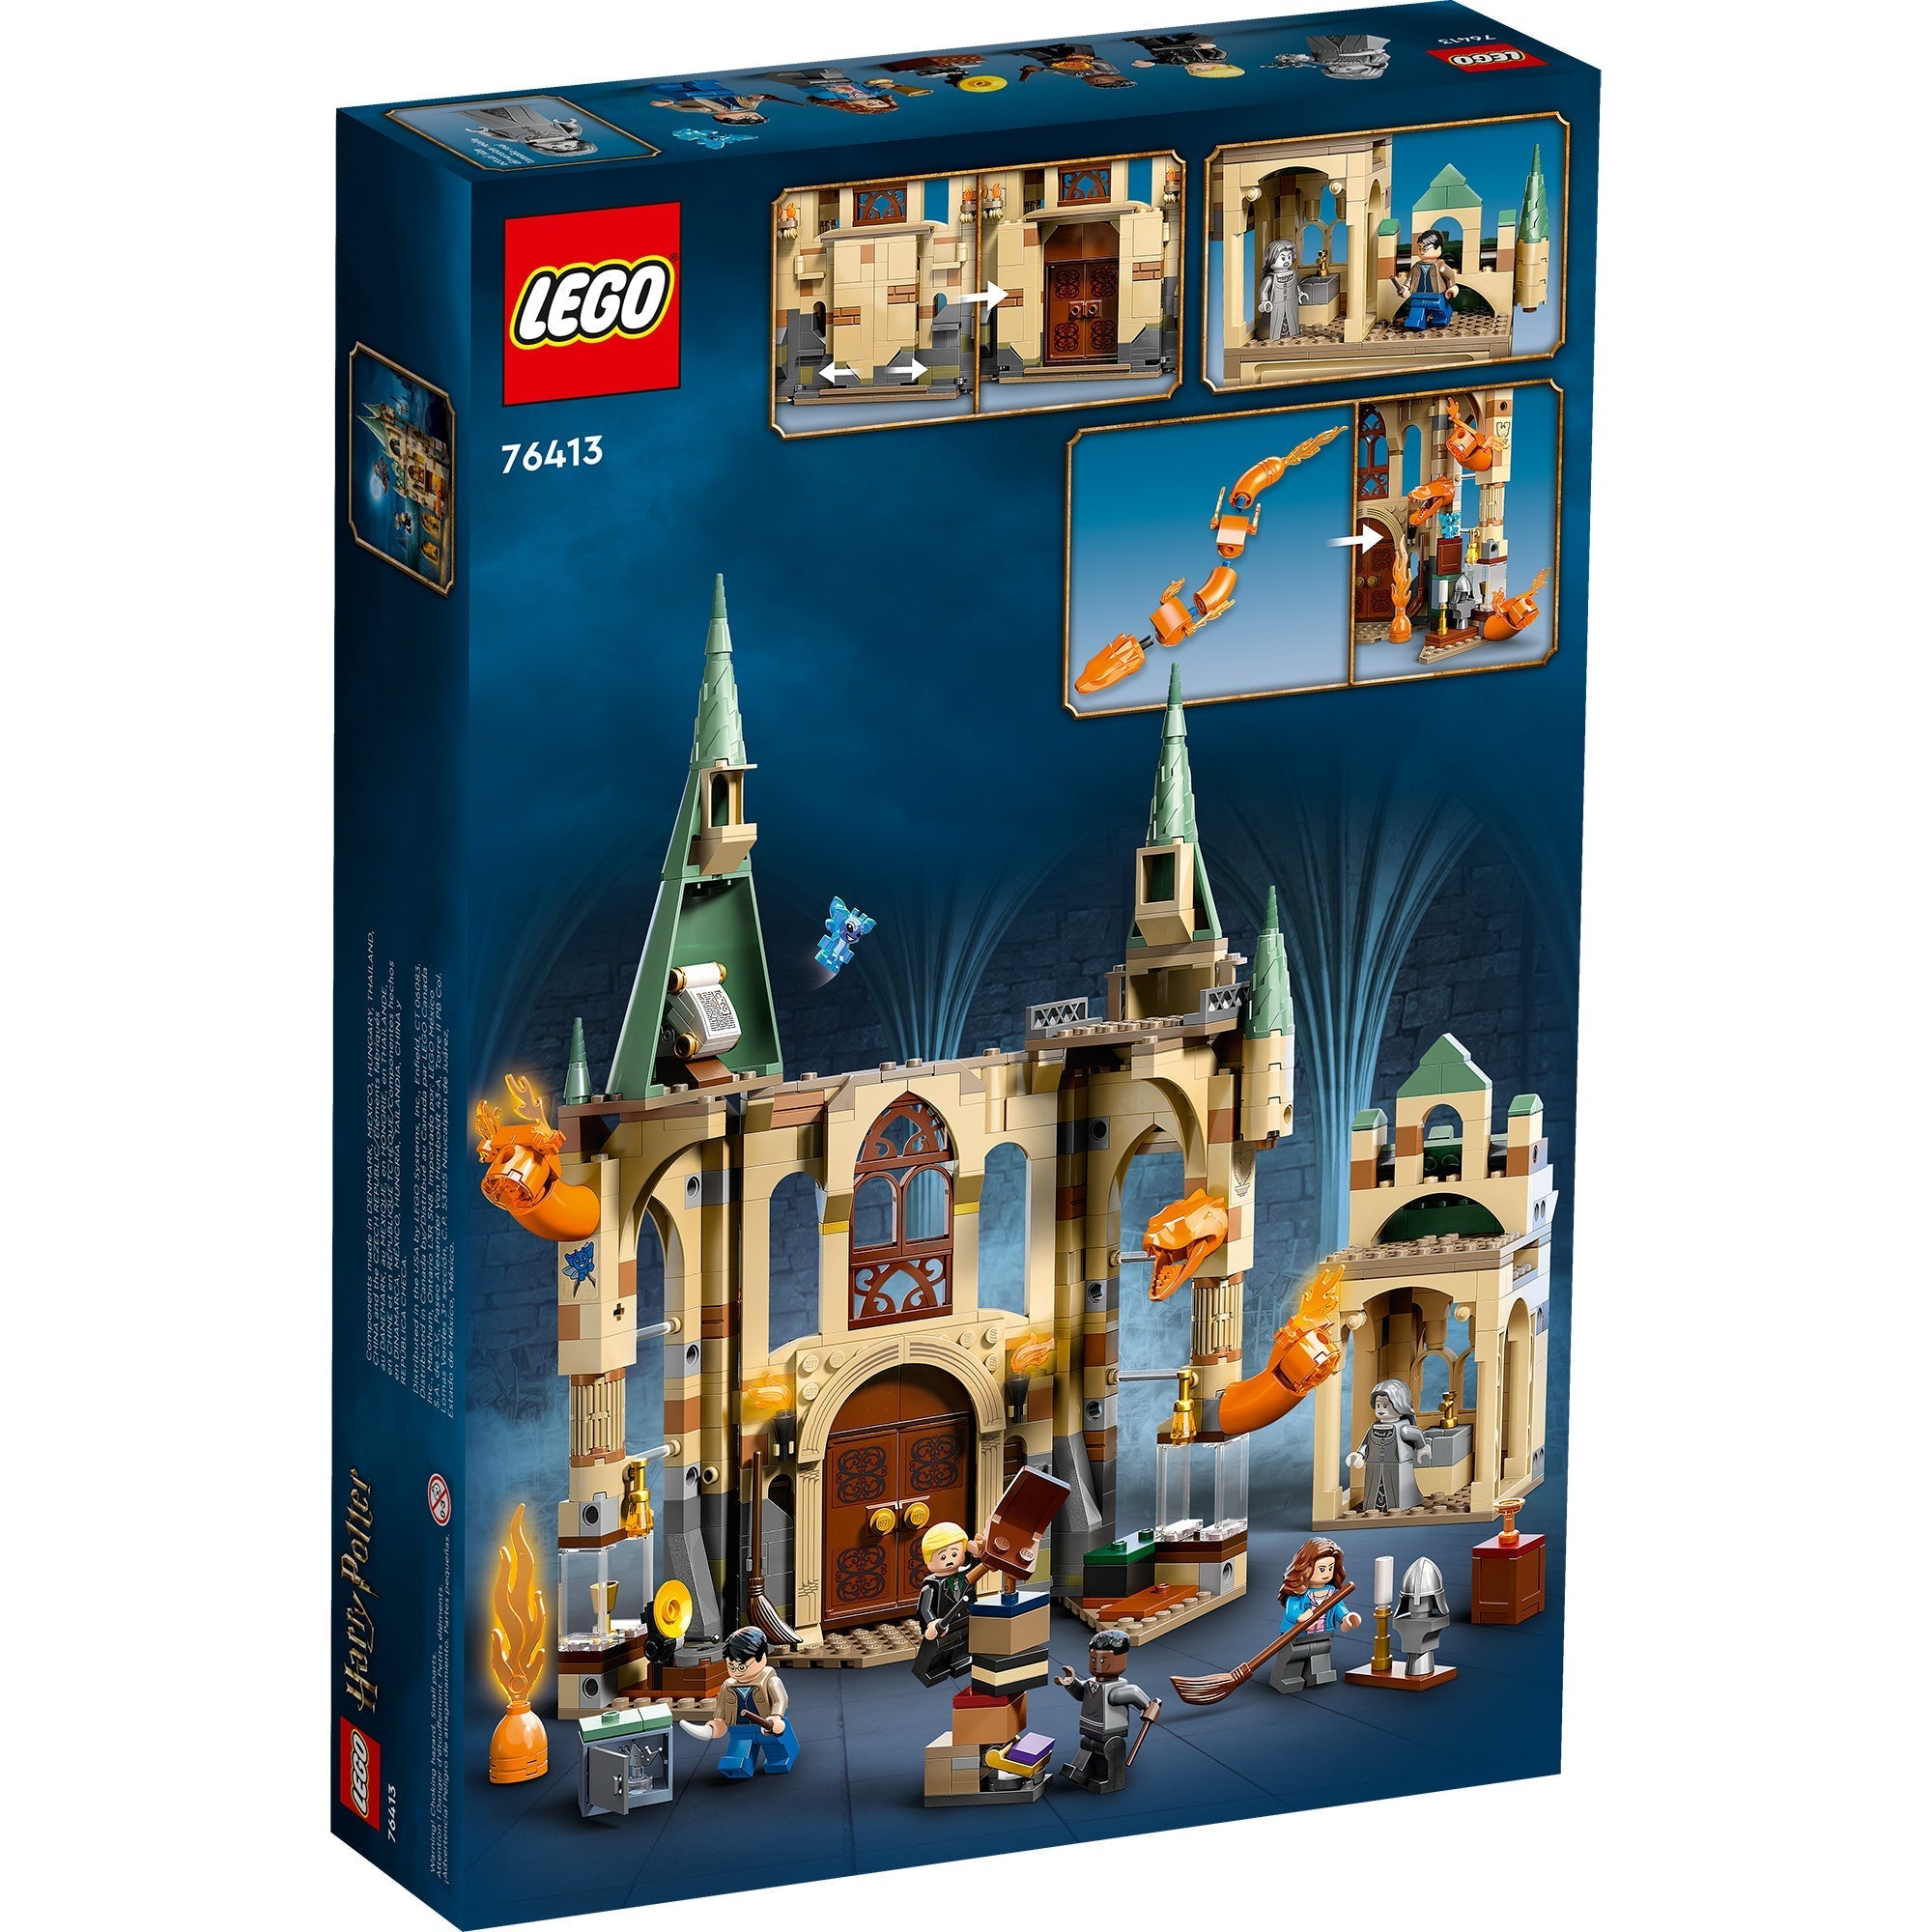 Promo maxi sur ce jouet Lego Harry Potter - Purepeople